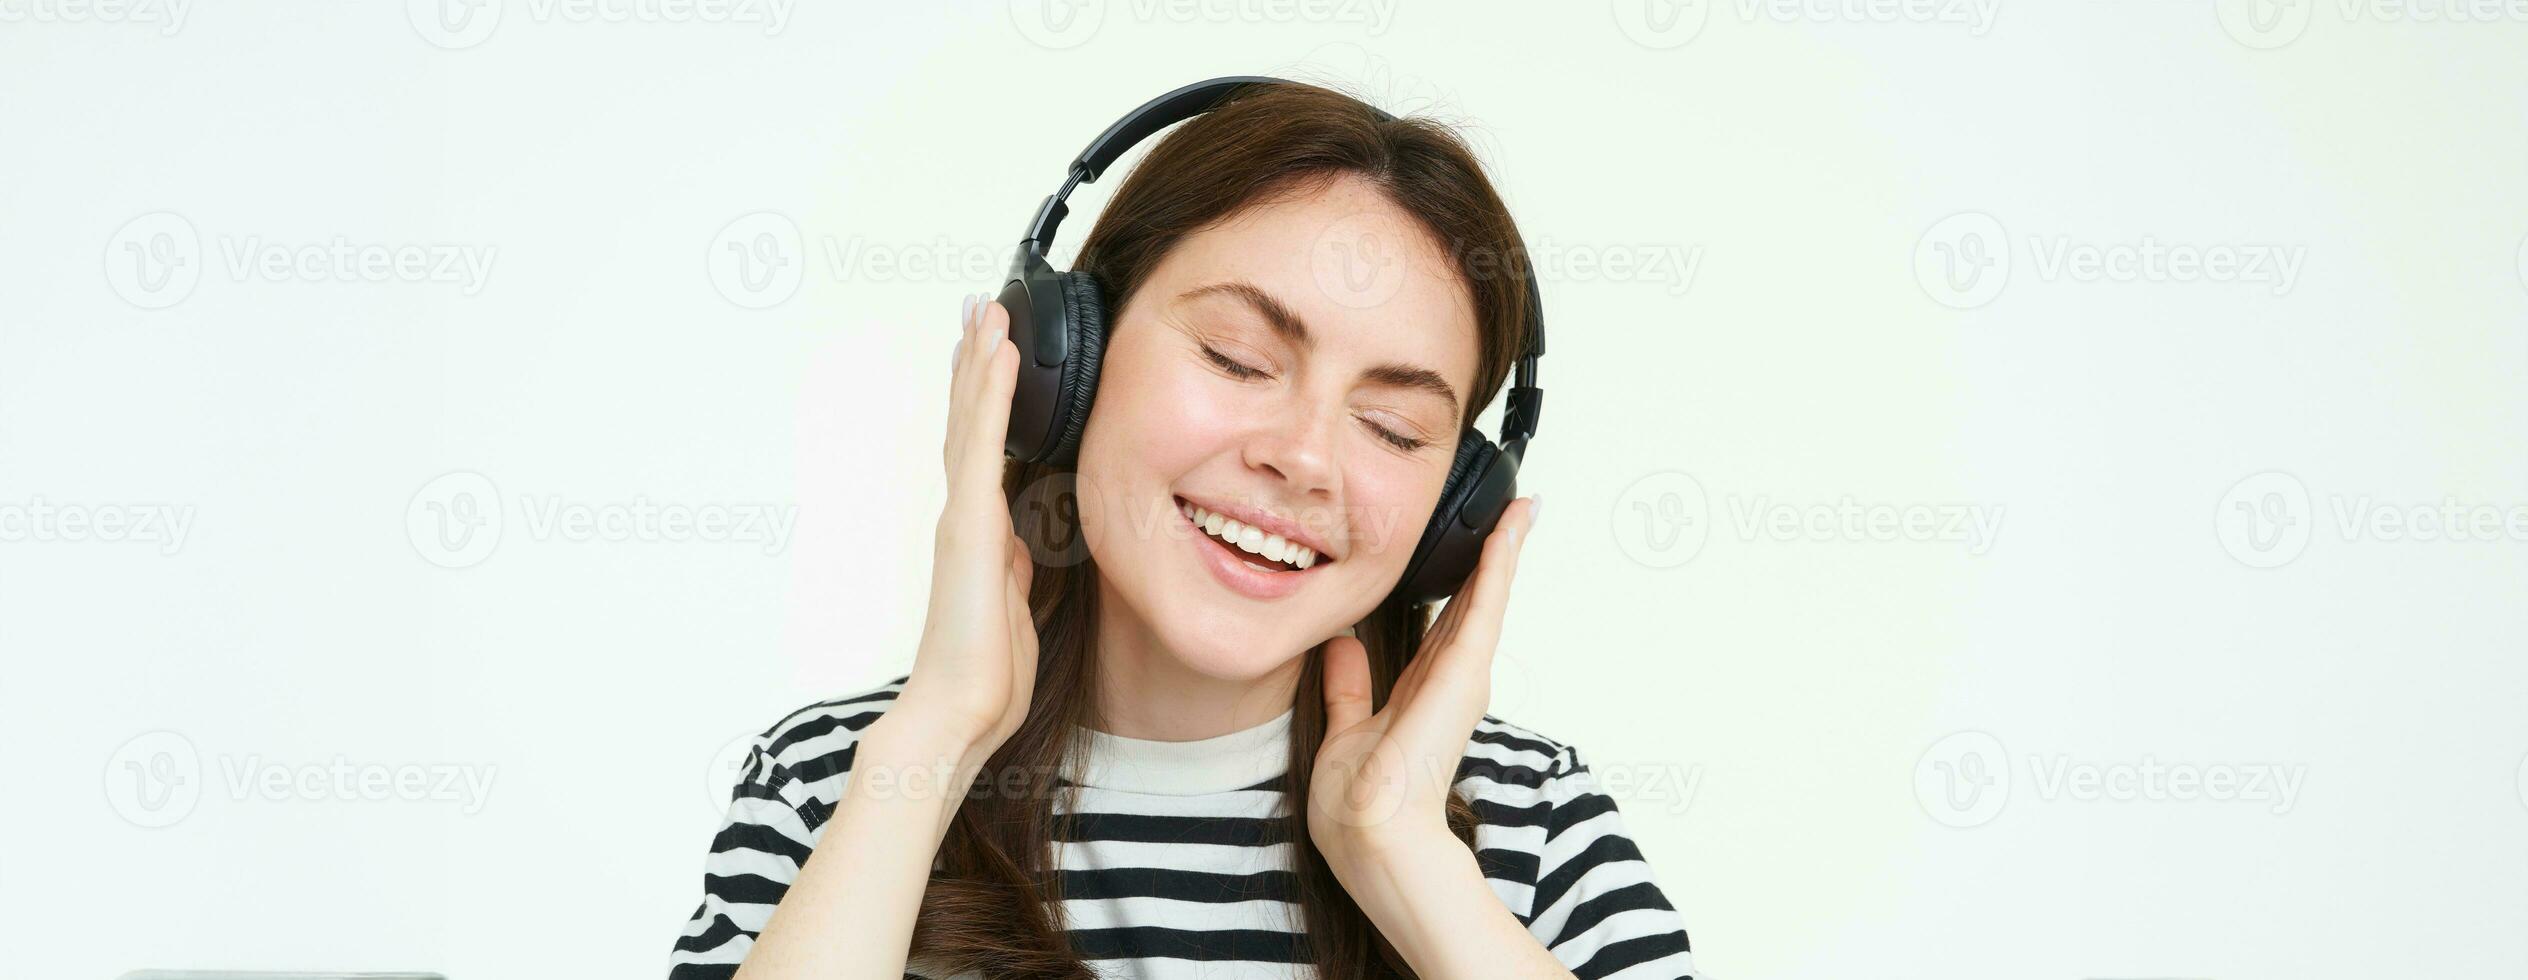 porträtt av skön kvinna i trådlös hörlurar, lyssnande musik, använder sig av hörlurar, leende på kamera, stående över vit bakgrund foto